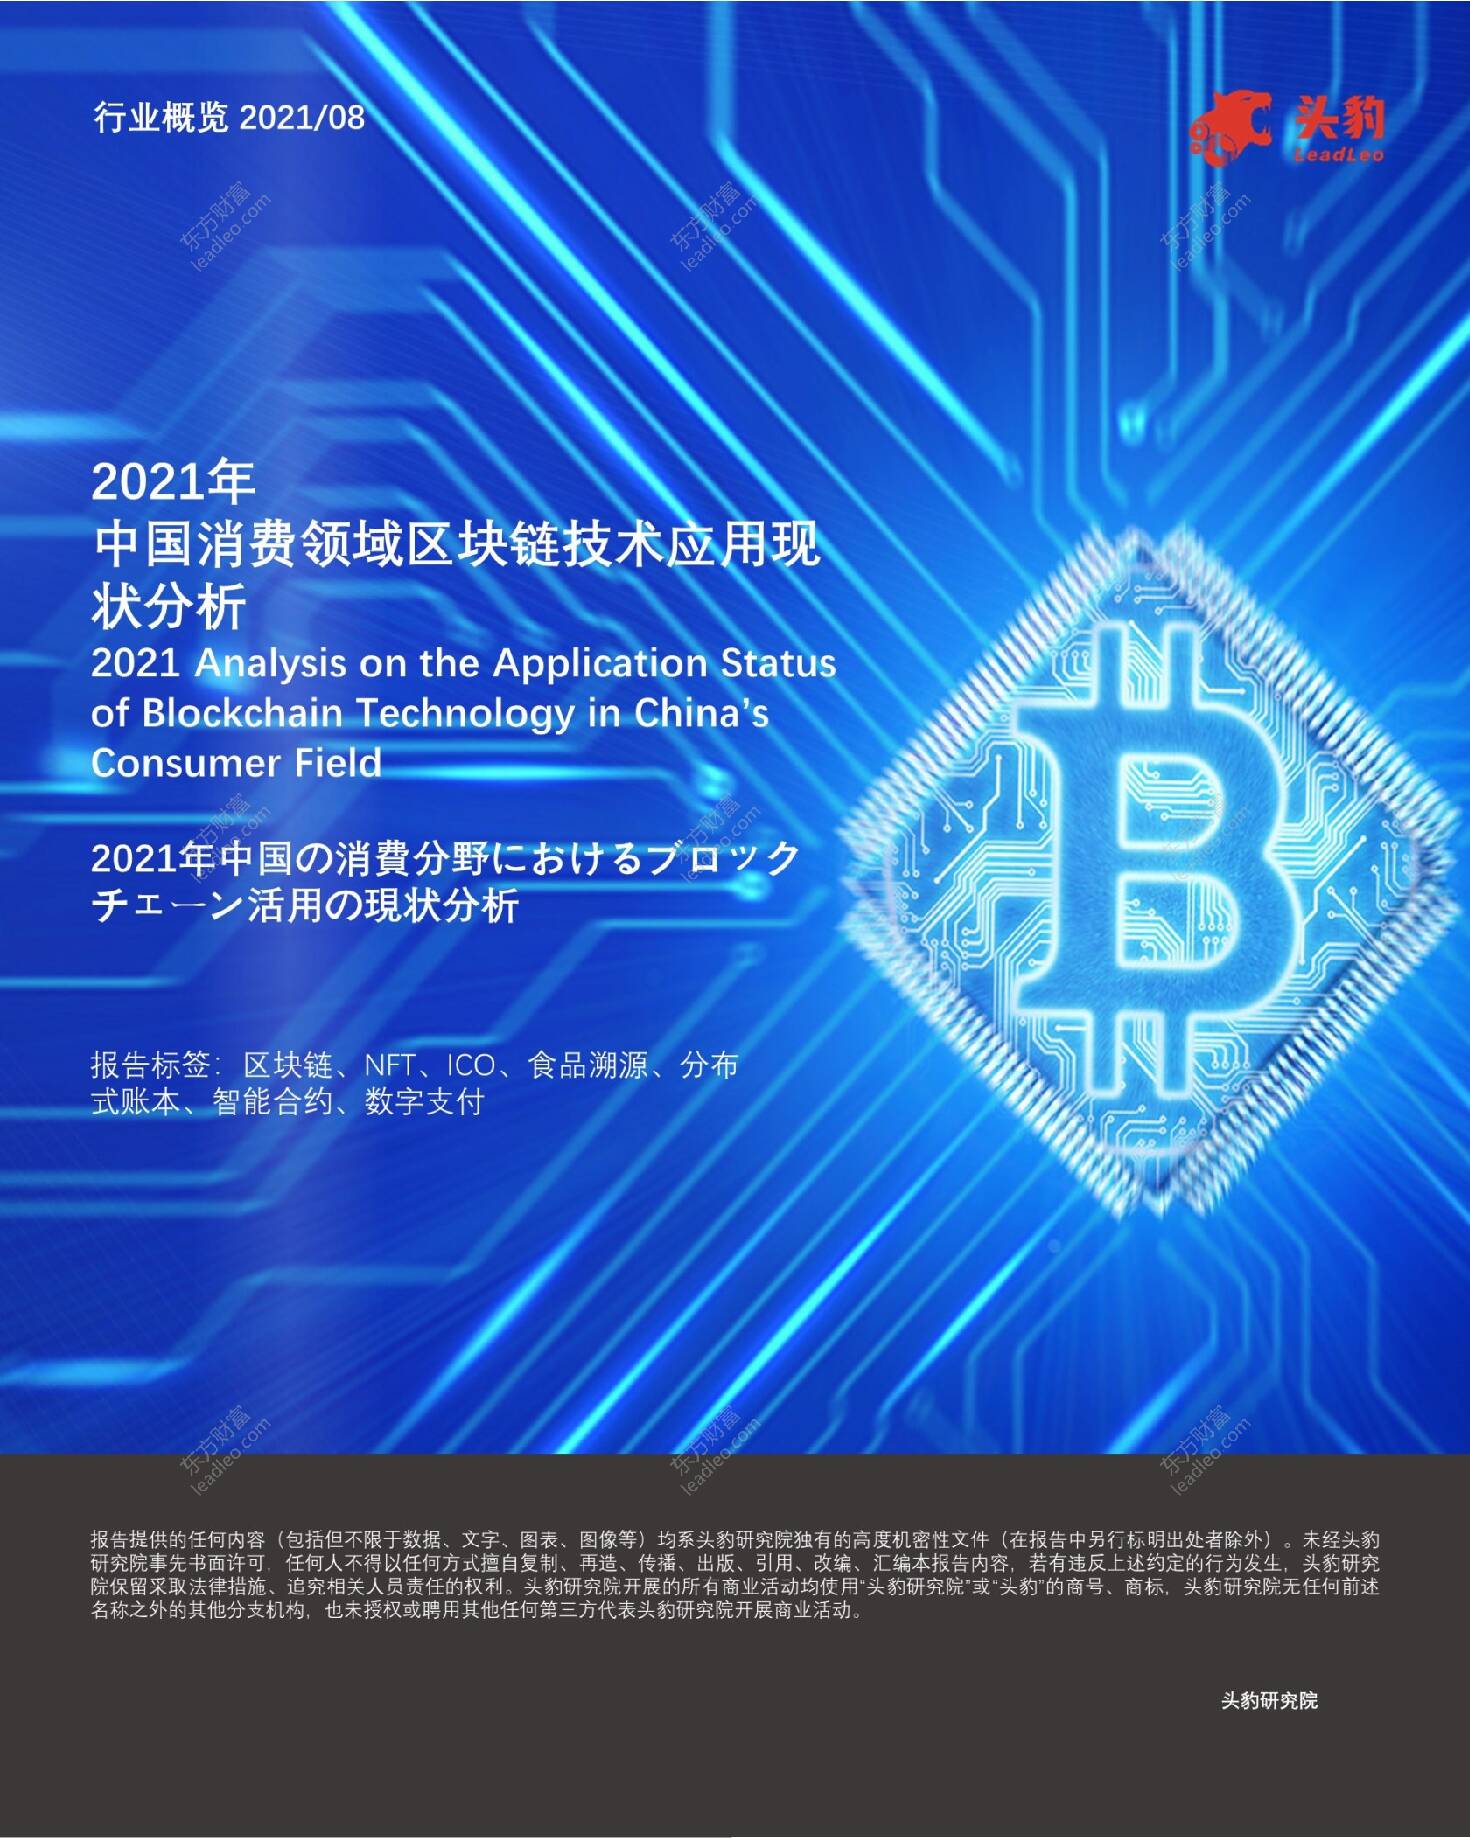 2021年中国消费领域区块链技术应用现状分析 头豹研究院 2021-09-22